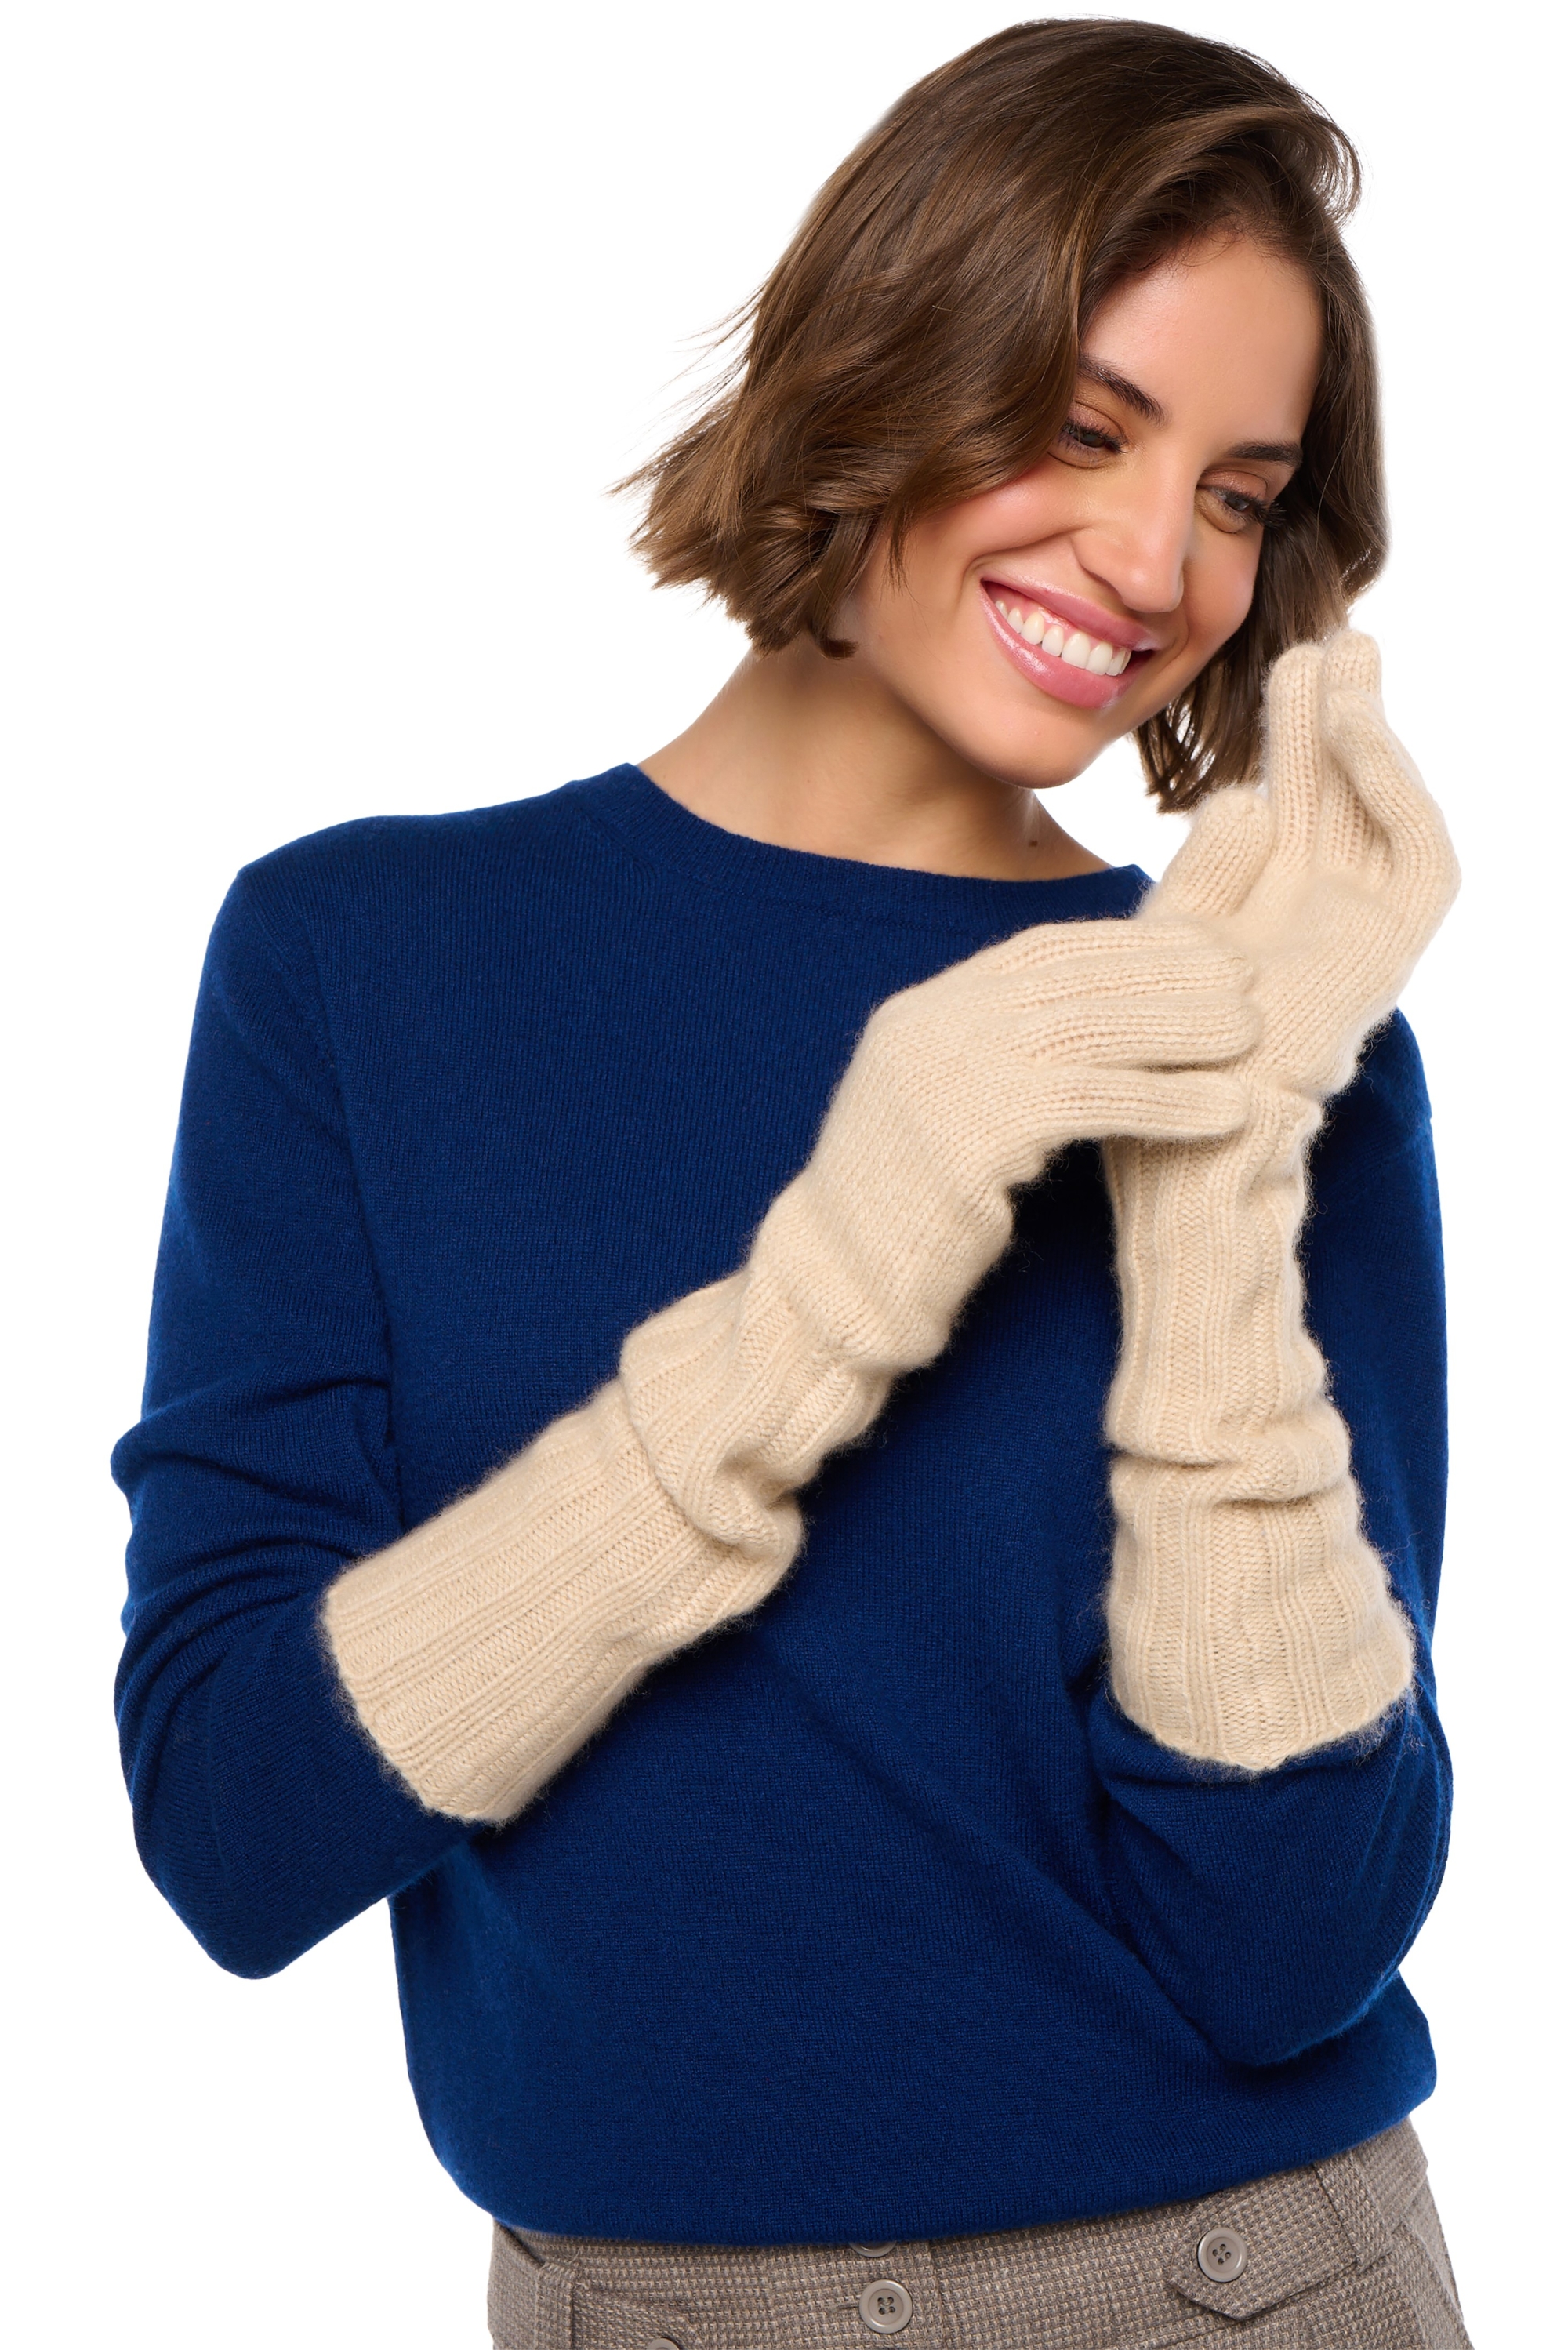 Cashmere accessories gloves tadam natural beige 41 x 13 cm